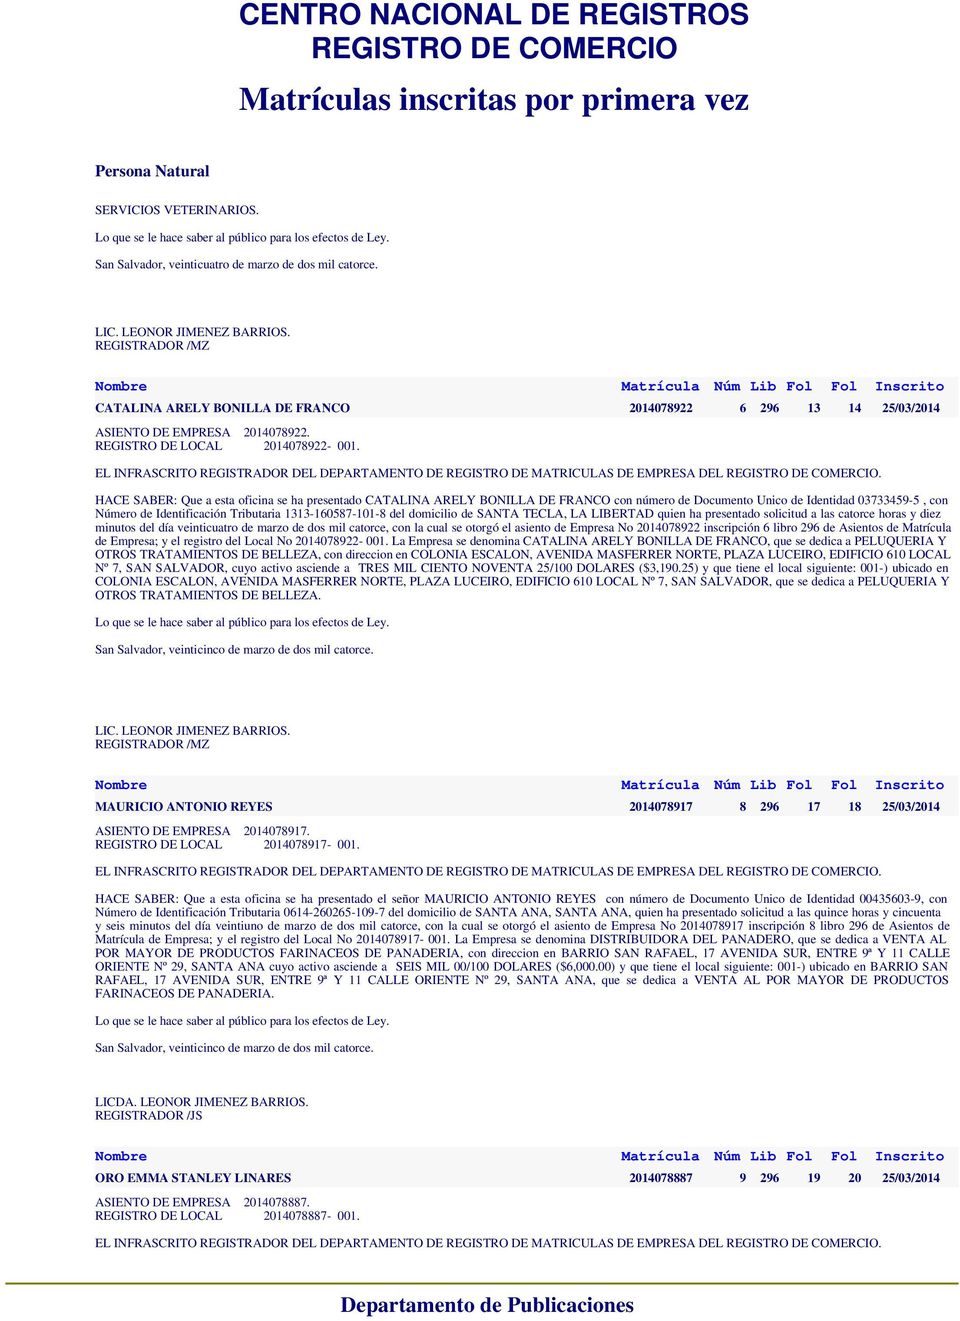 HACE SABER: Que a esta oficina se ha presentado CATALINA ARELY BONILLA DE FRANCO con número de Documento Unico de Identidad 03733459-5, con Número de Identificación Tributaria 1313-160587-101-8 del